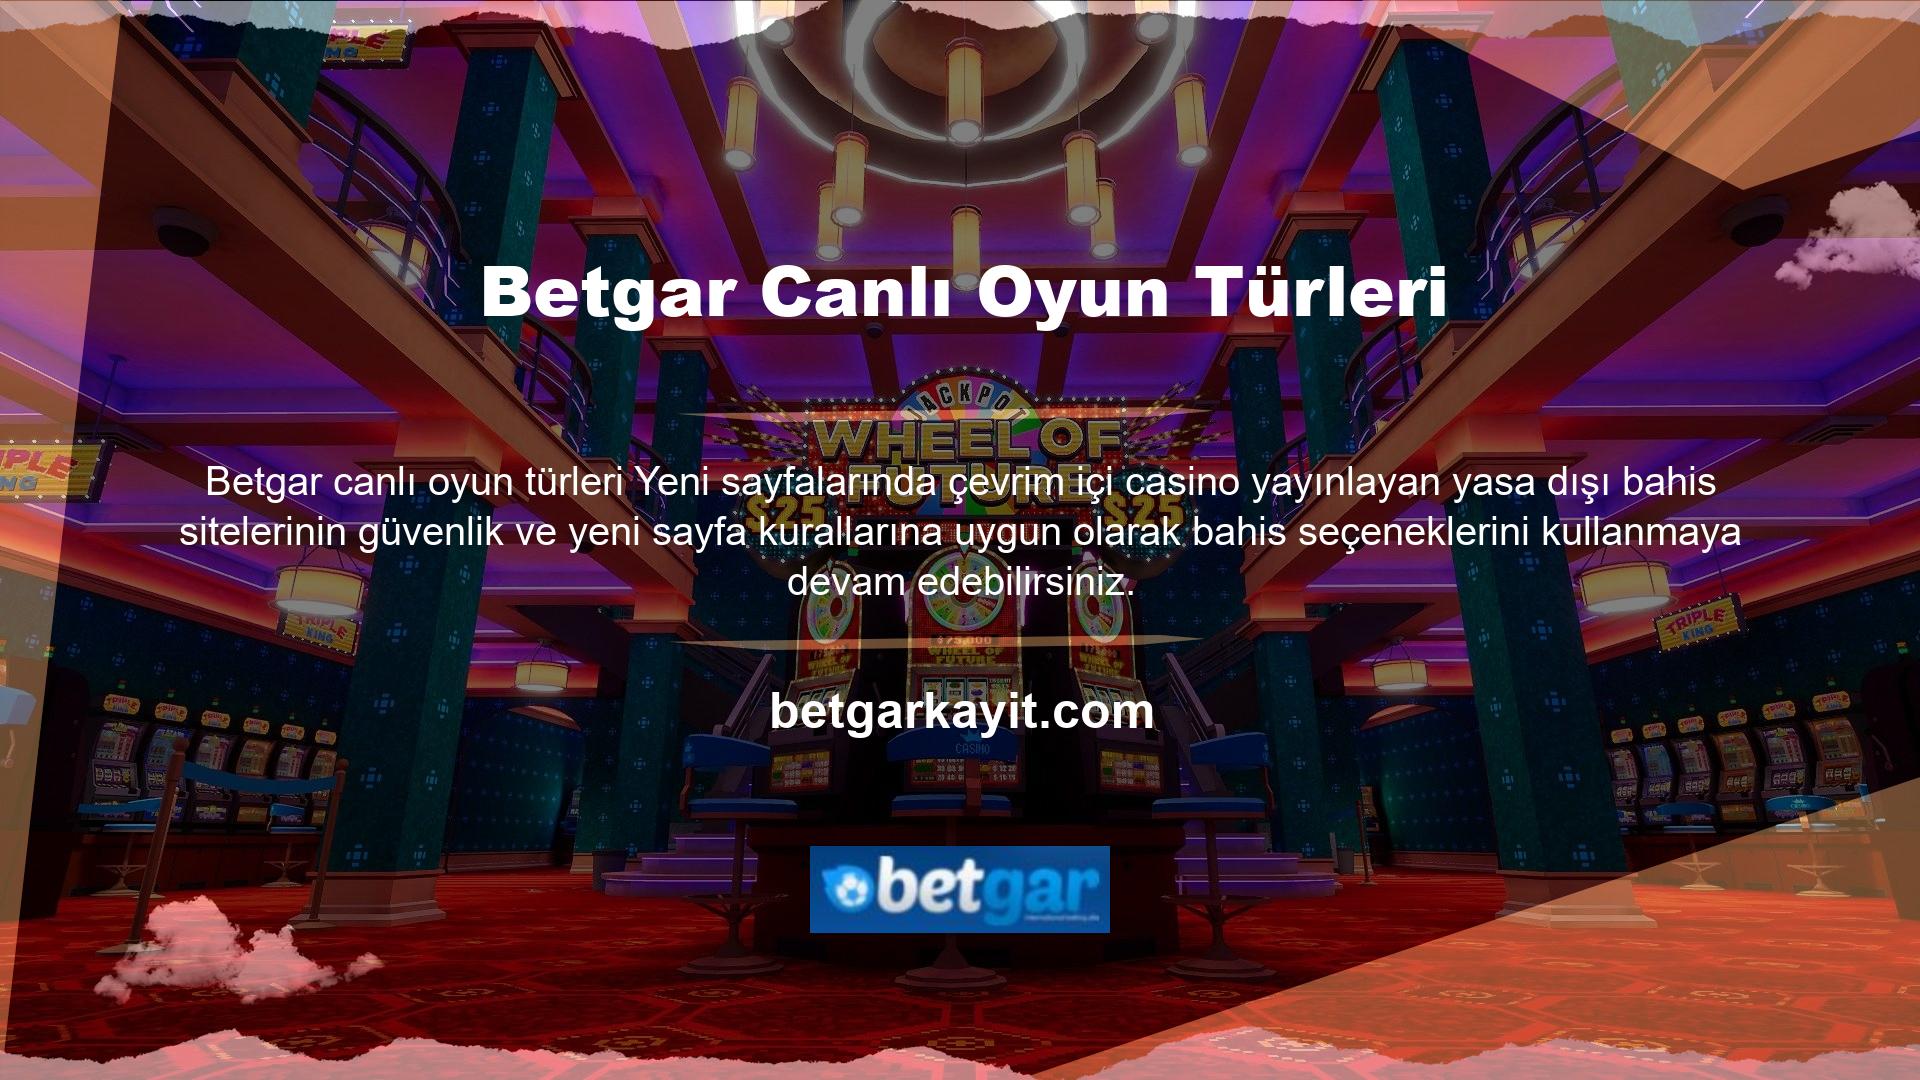 Güvenli ve üye dostu bir web sayfası ile Netent gibi hizmetlerle her tür Türk oyunu için premium içerik bulabileceksiniz